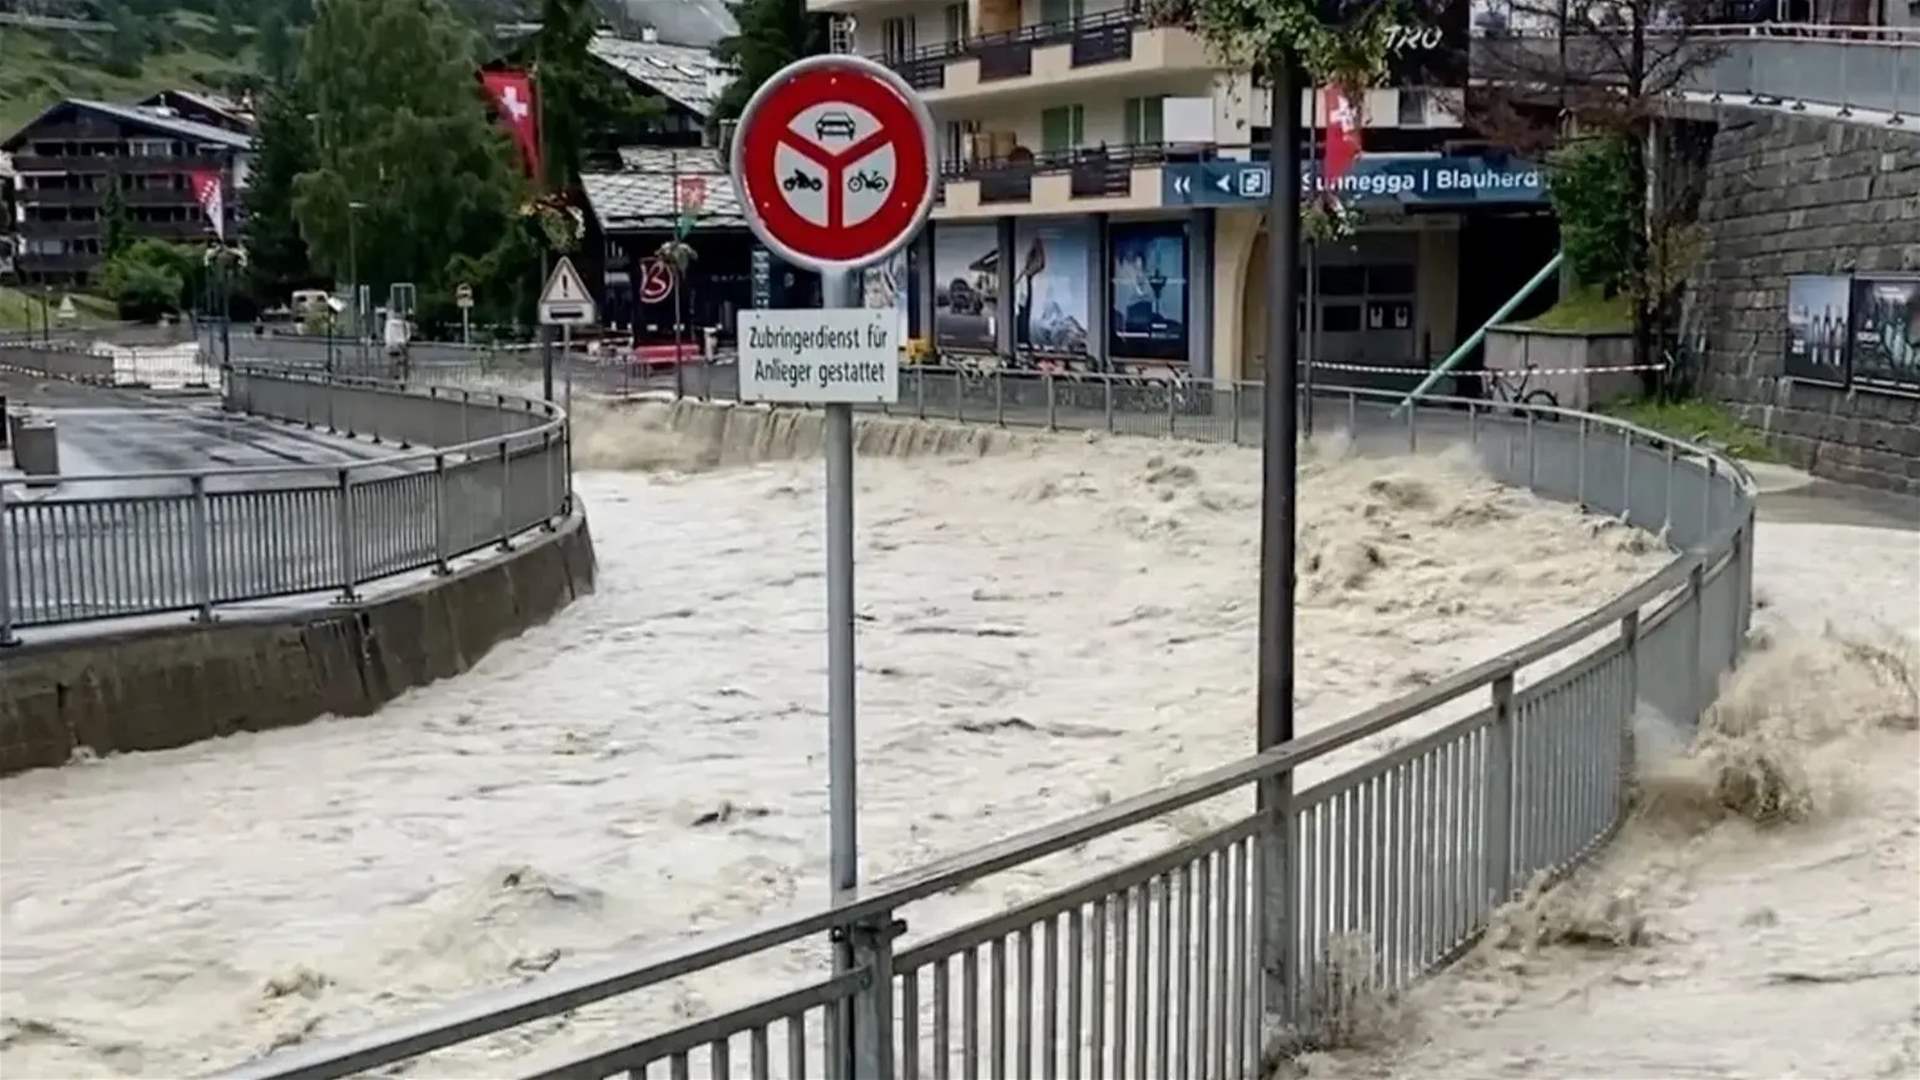 العثور على جثة بعد فيضانات سويسرا وشخصان في عداد المفقودين